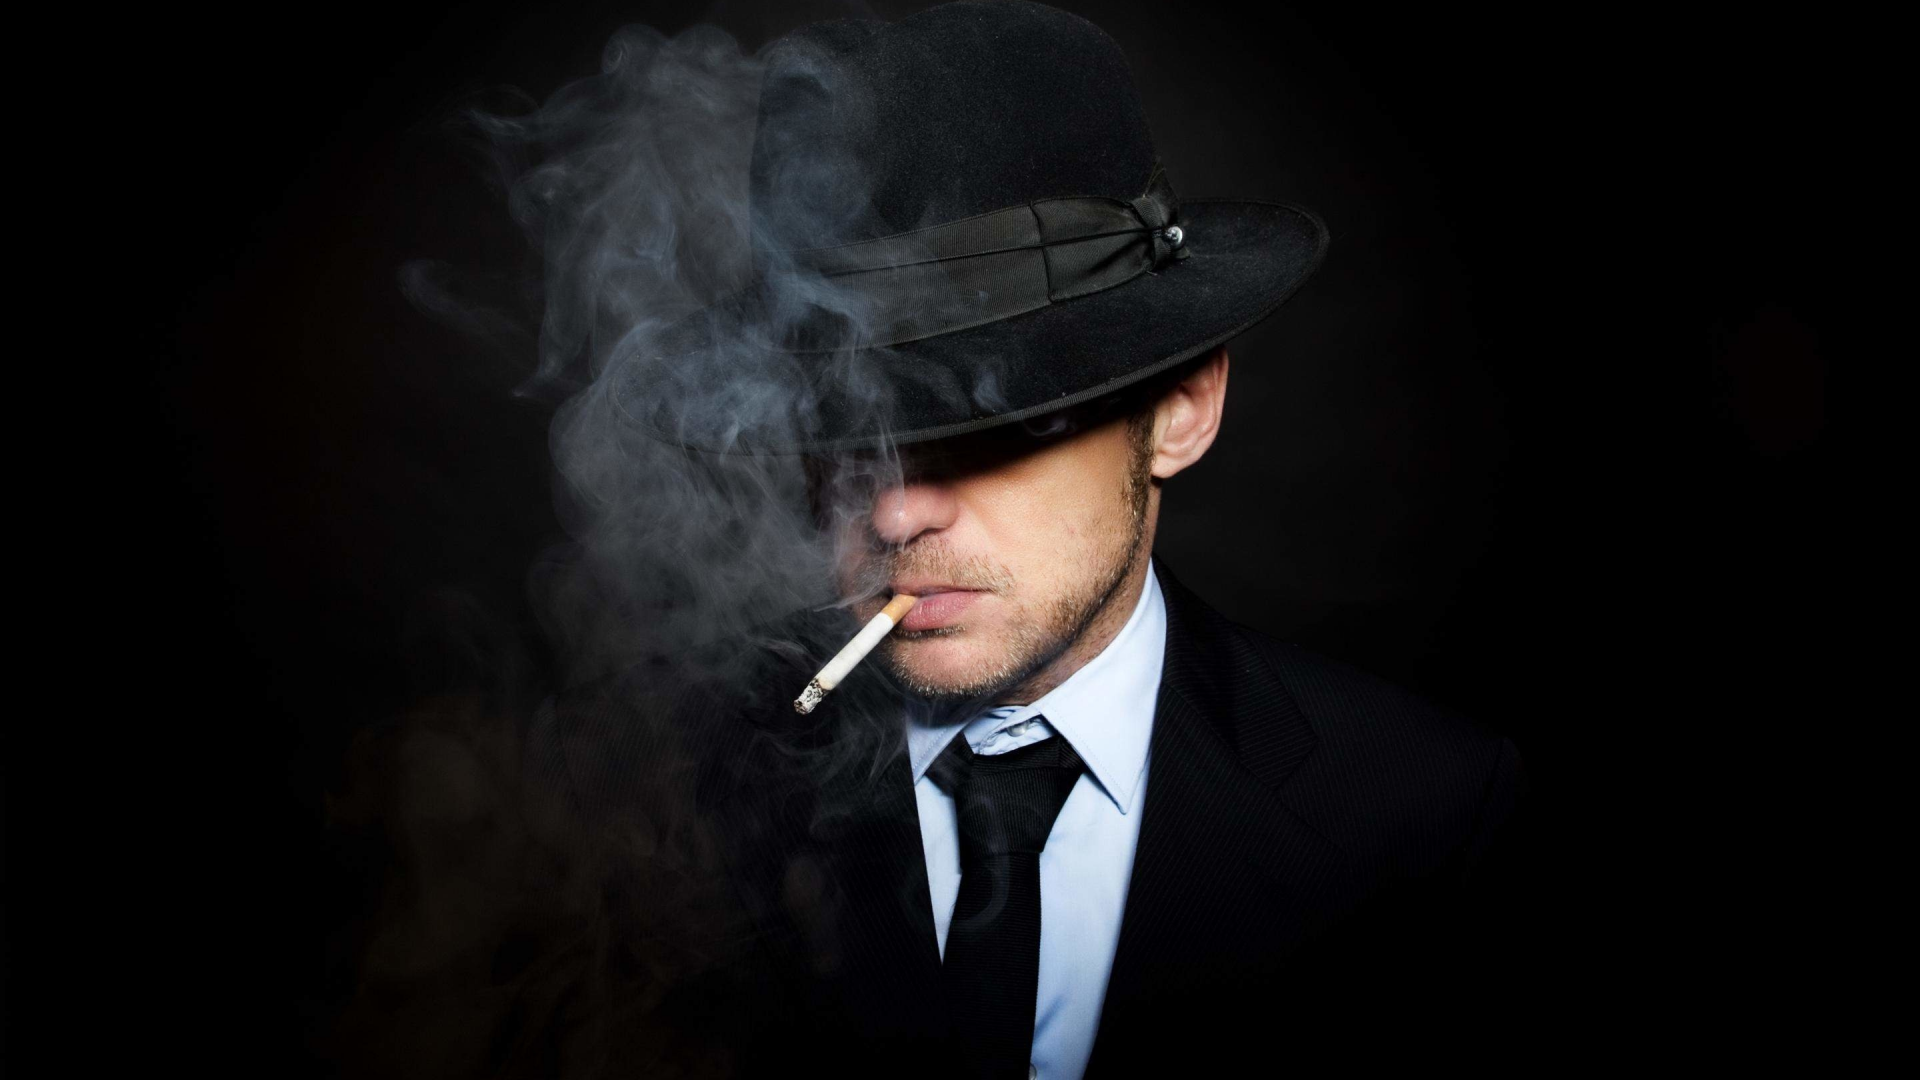 мужик, шляпа, сигарета, дым, костюм